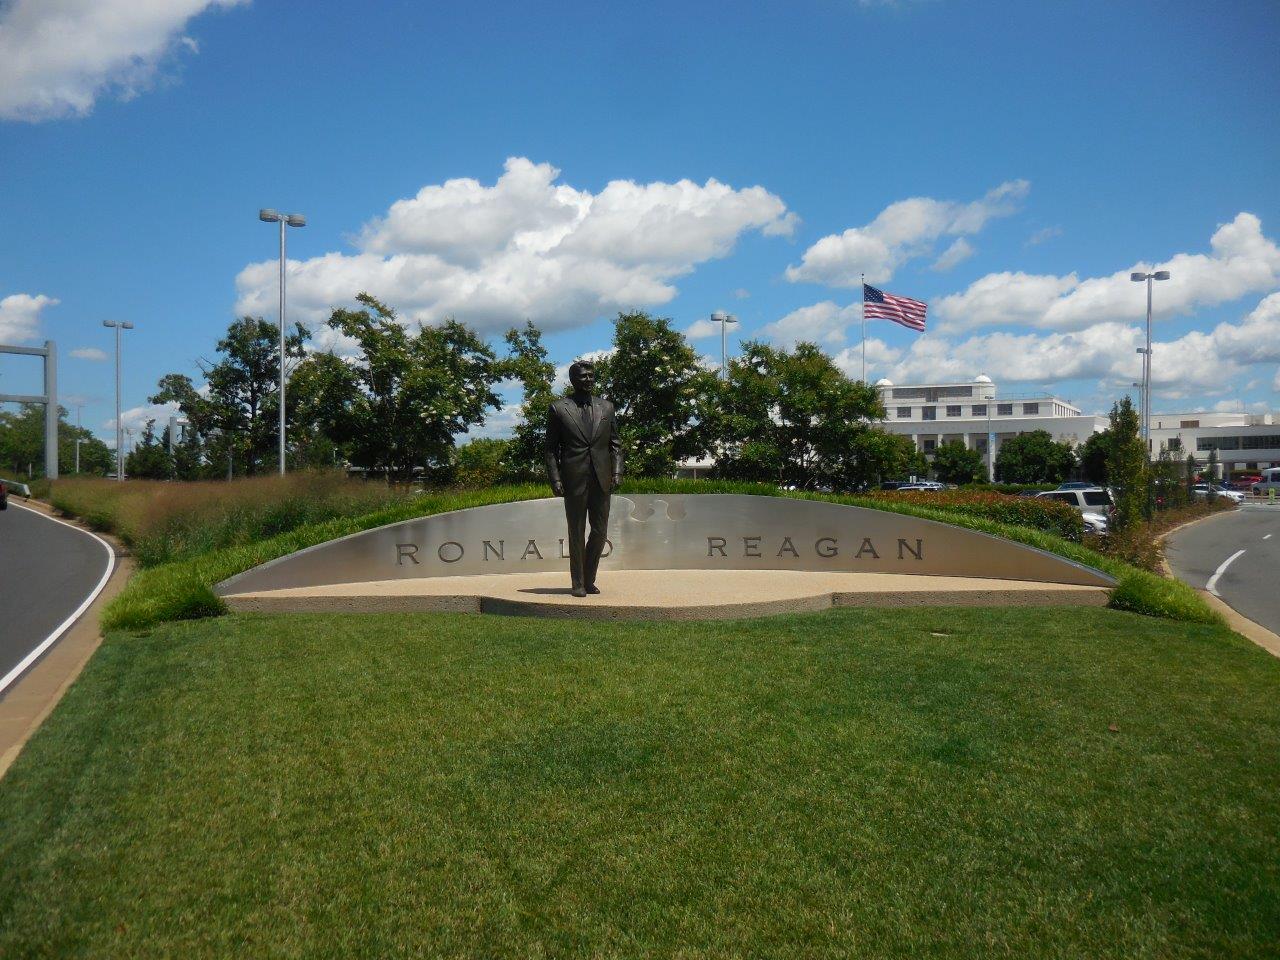 Reagan statue at Reagan National Airport (DCA)